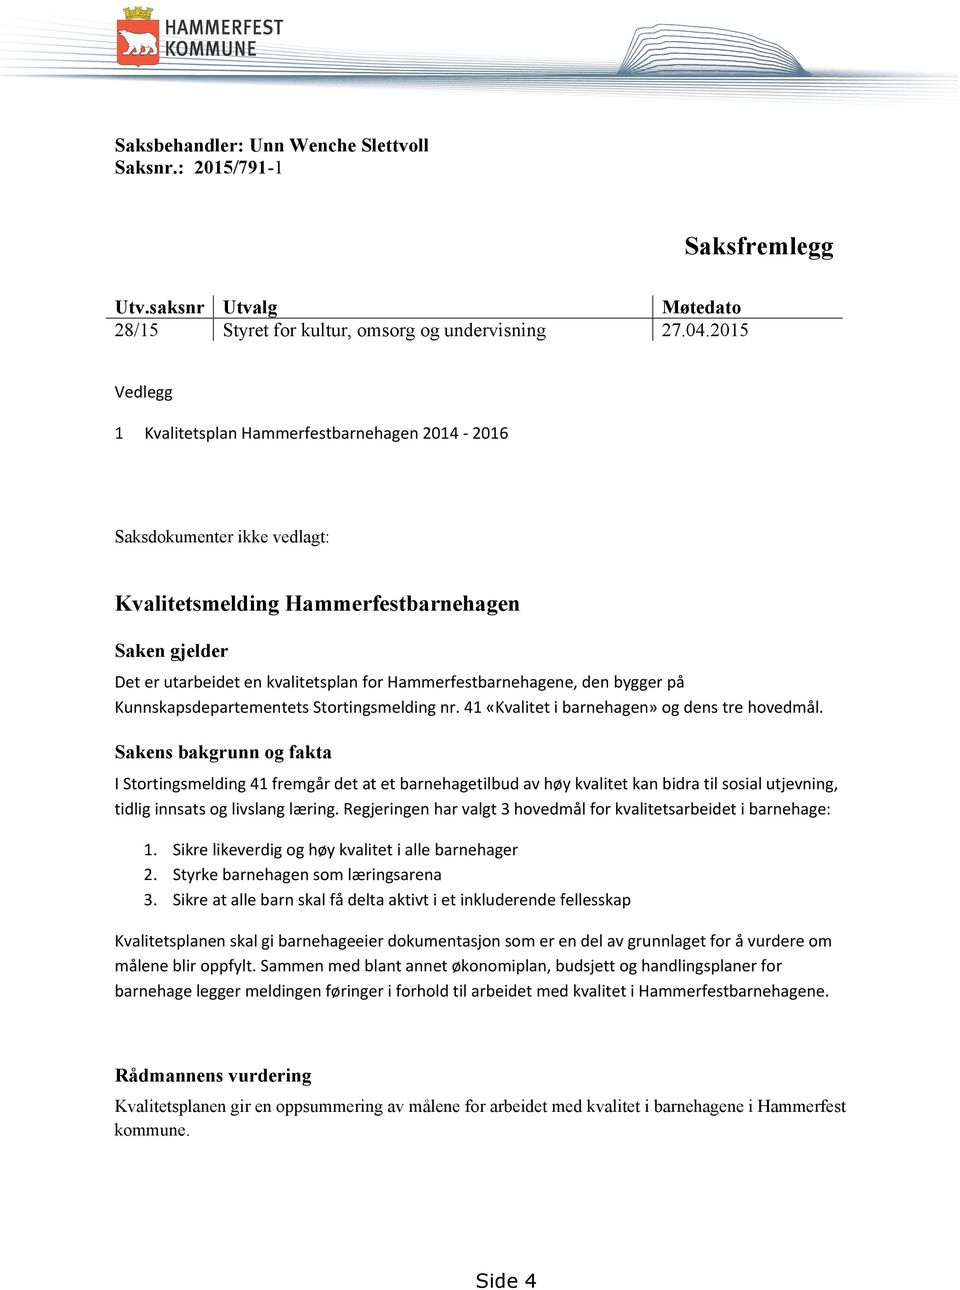 Hammerfestbarnehagene, den bygger på Kunnskapsdepartementets Stortingsmelding nr. 41 «Kvalitet i barnehagen» og dens tre hovedmål.